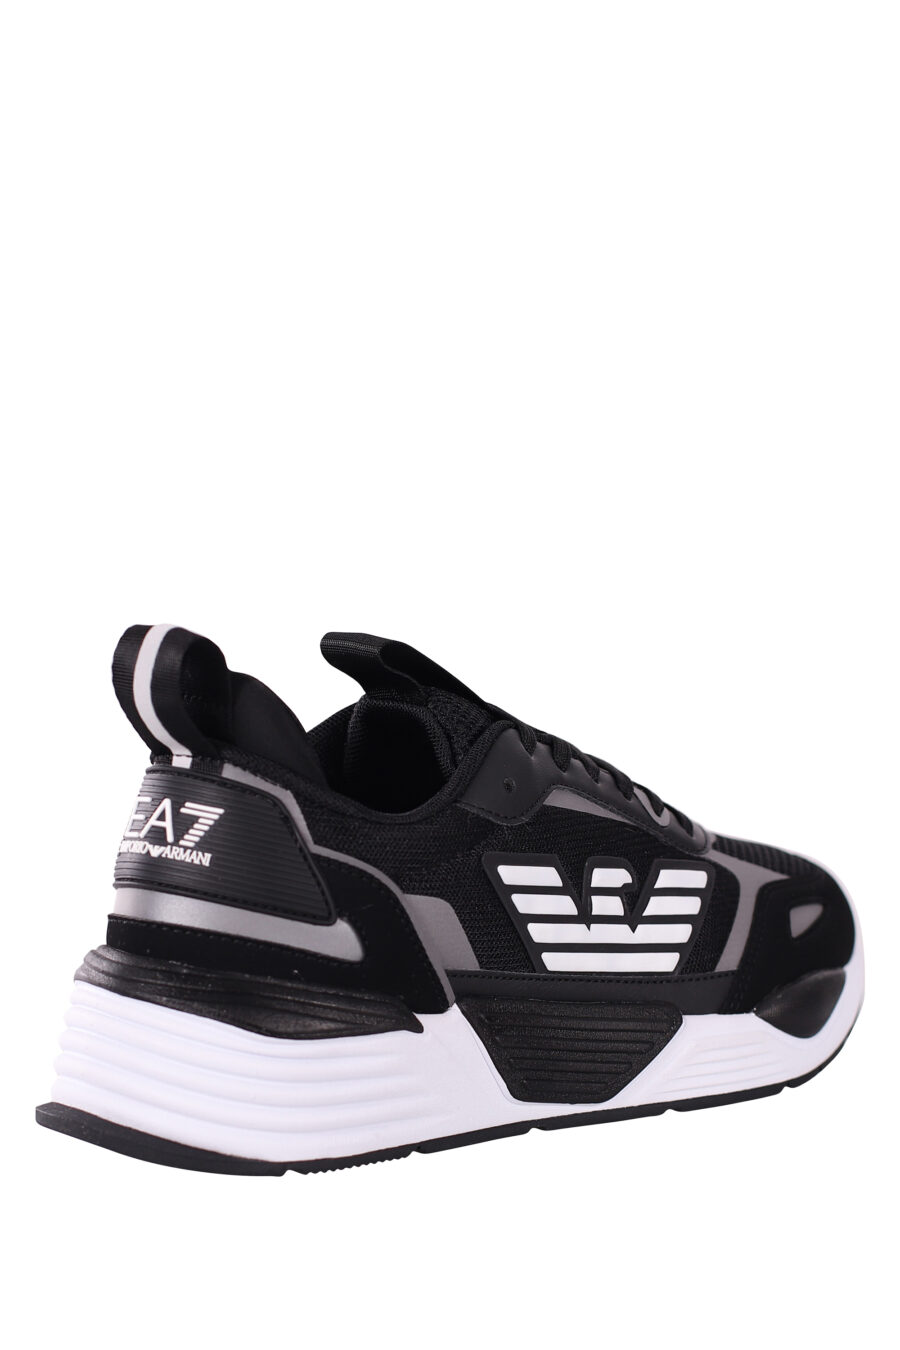 Zapatillas negras y plateado "ace runner" con logo de aguila - IMG 5799